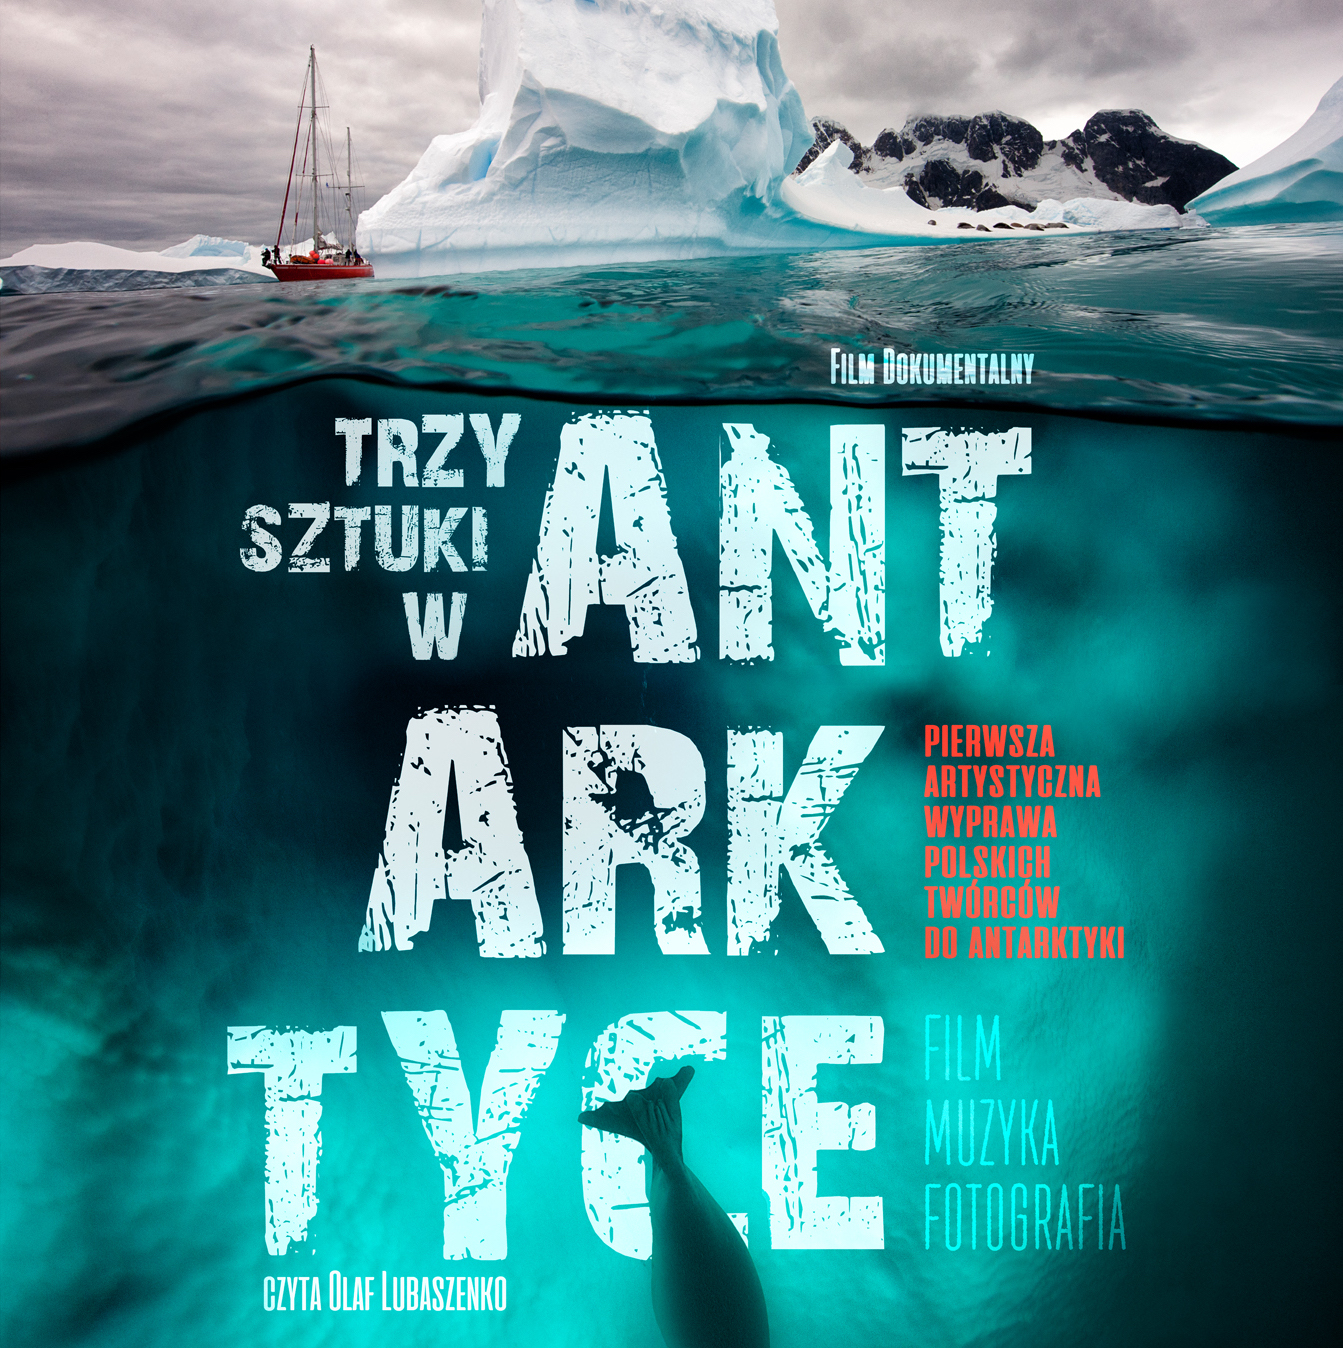 Plakat Filmu Dokumentalnego Trzy Sztuki w Antarktyce